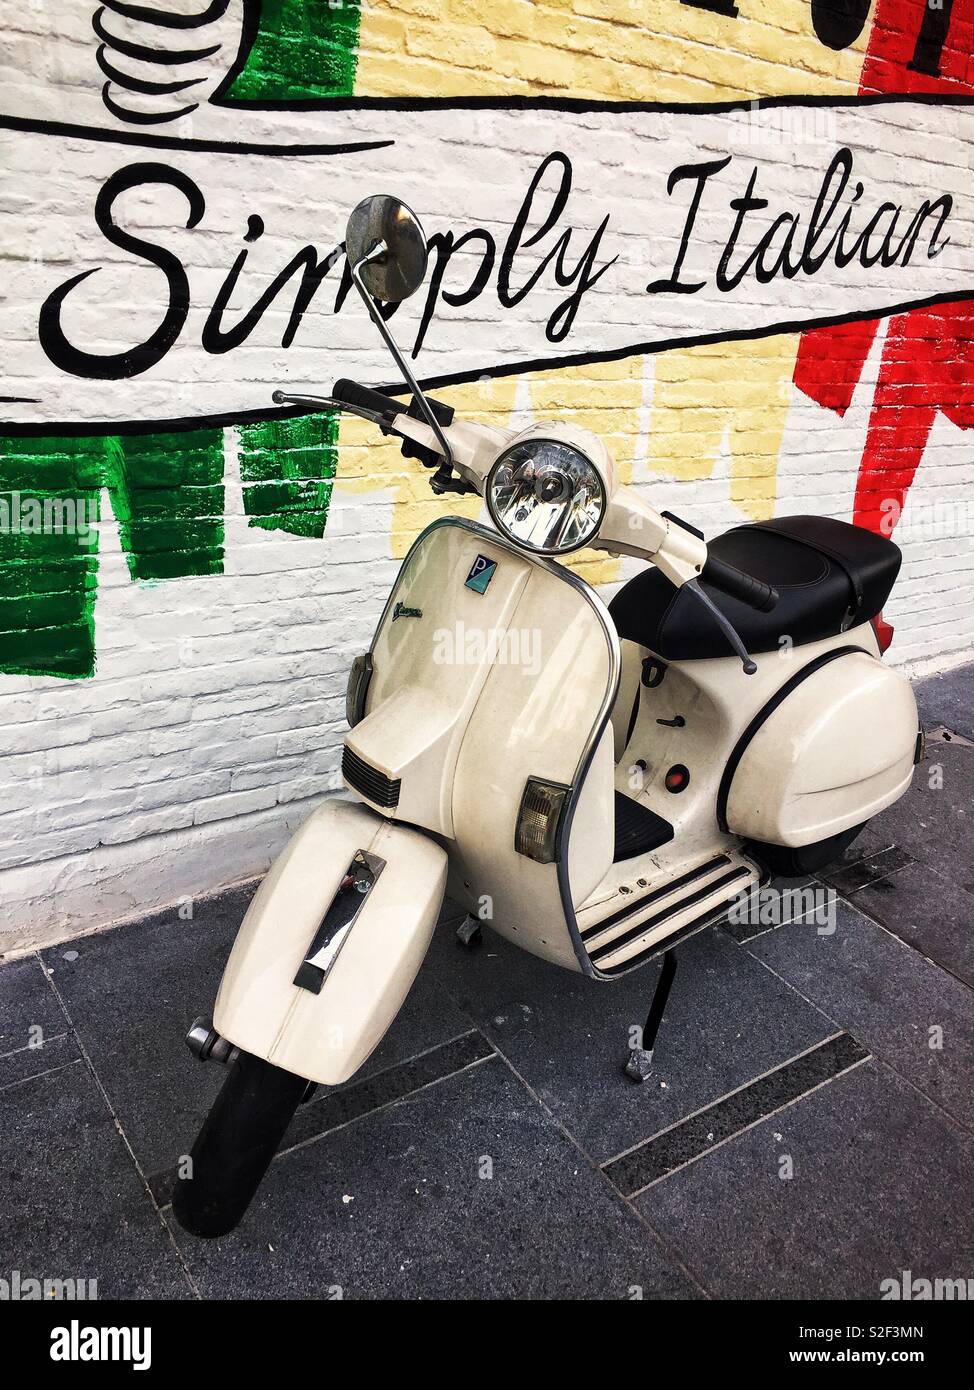 Vespa PX motor scooter mit einem Wandgemälde feiert seinen italienischen Erbe Stockfoto